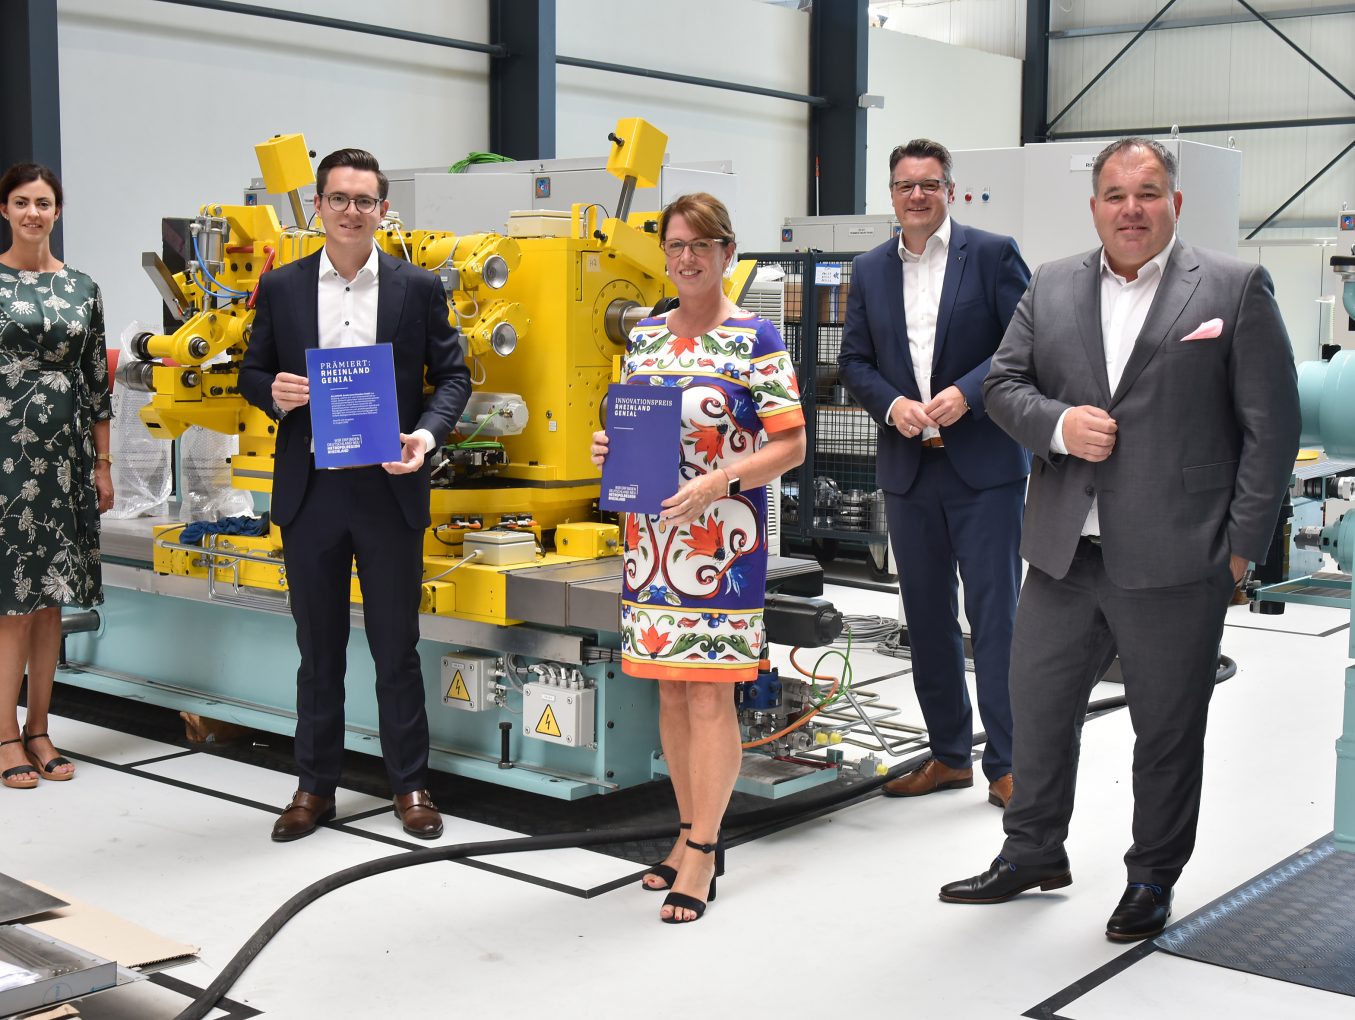 Erster Award verliehen: Innovationspreis "Rheinland Genial" geht an DIRKRA Sondermaschinenbau GmbH in Stolberg